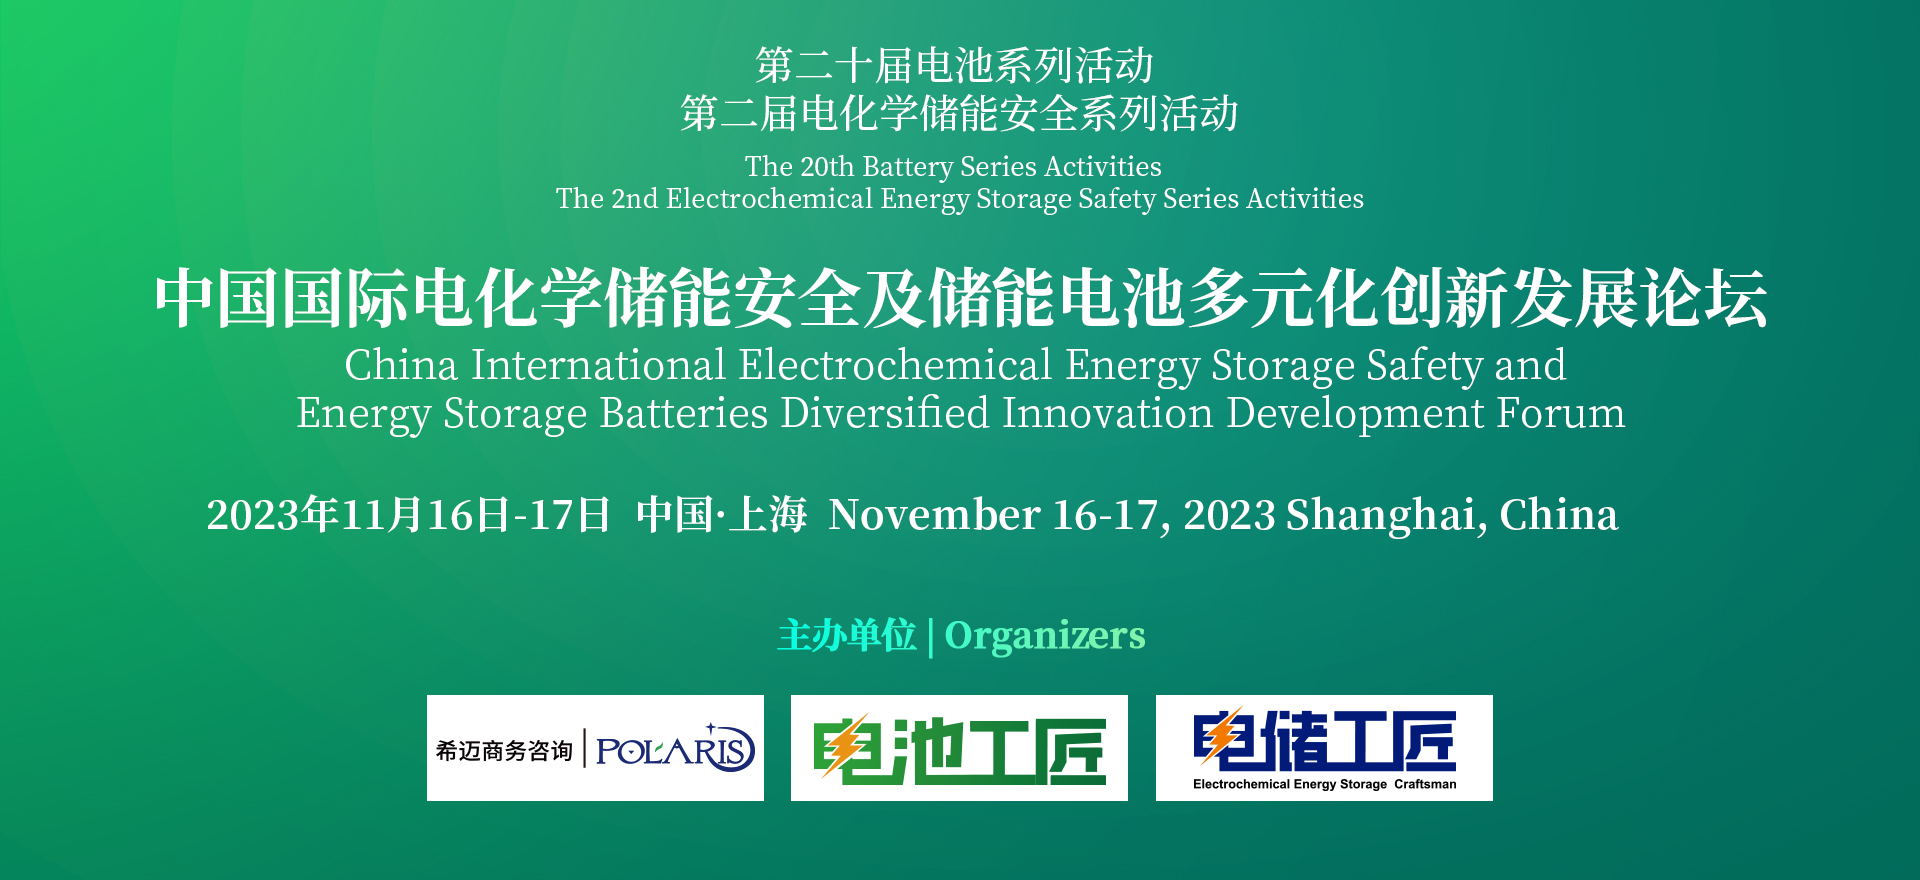 中国国际储能电池多元化创新及电化学储能安全高峰论坛